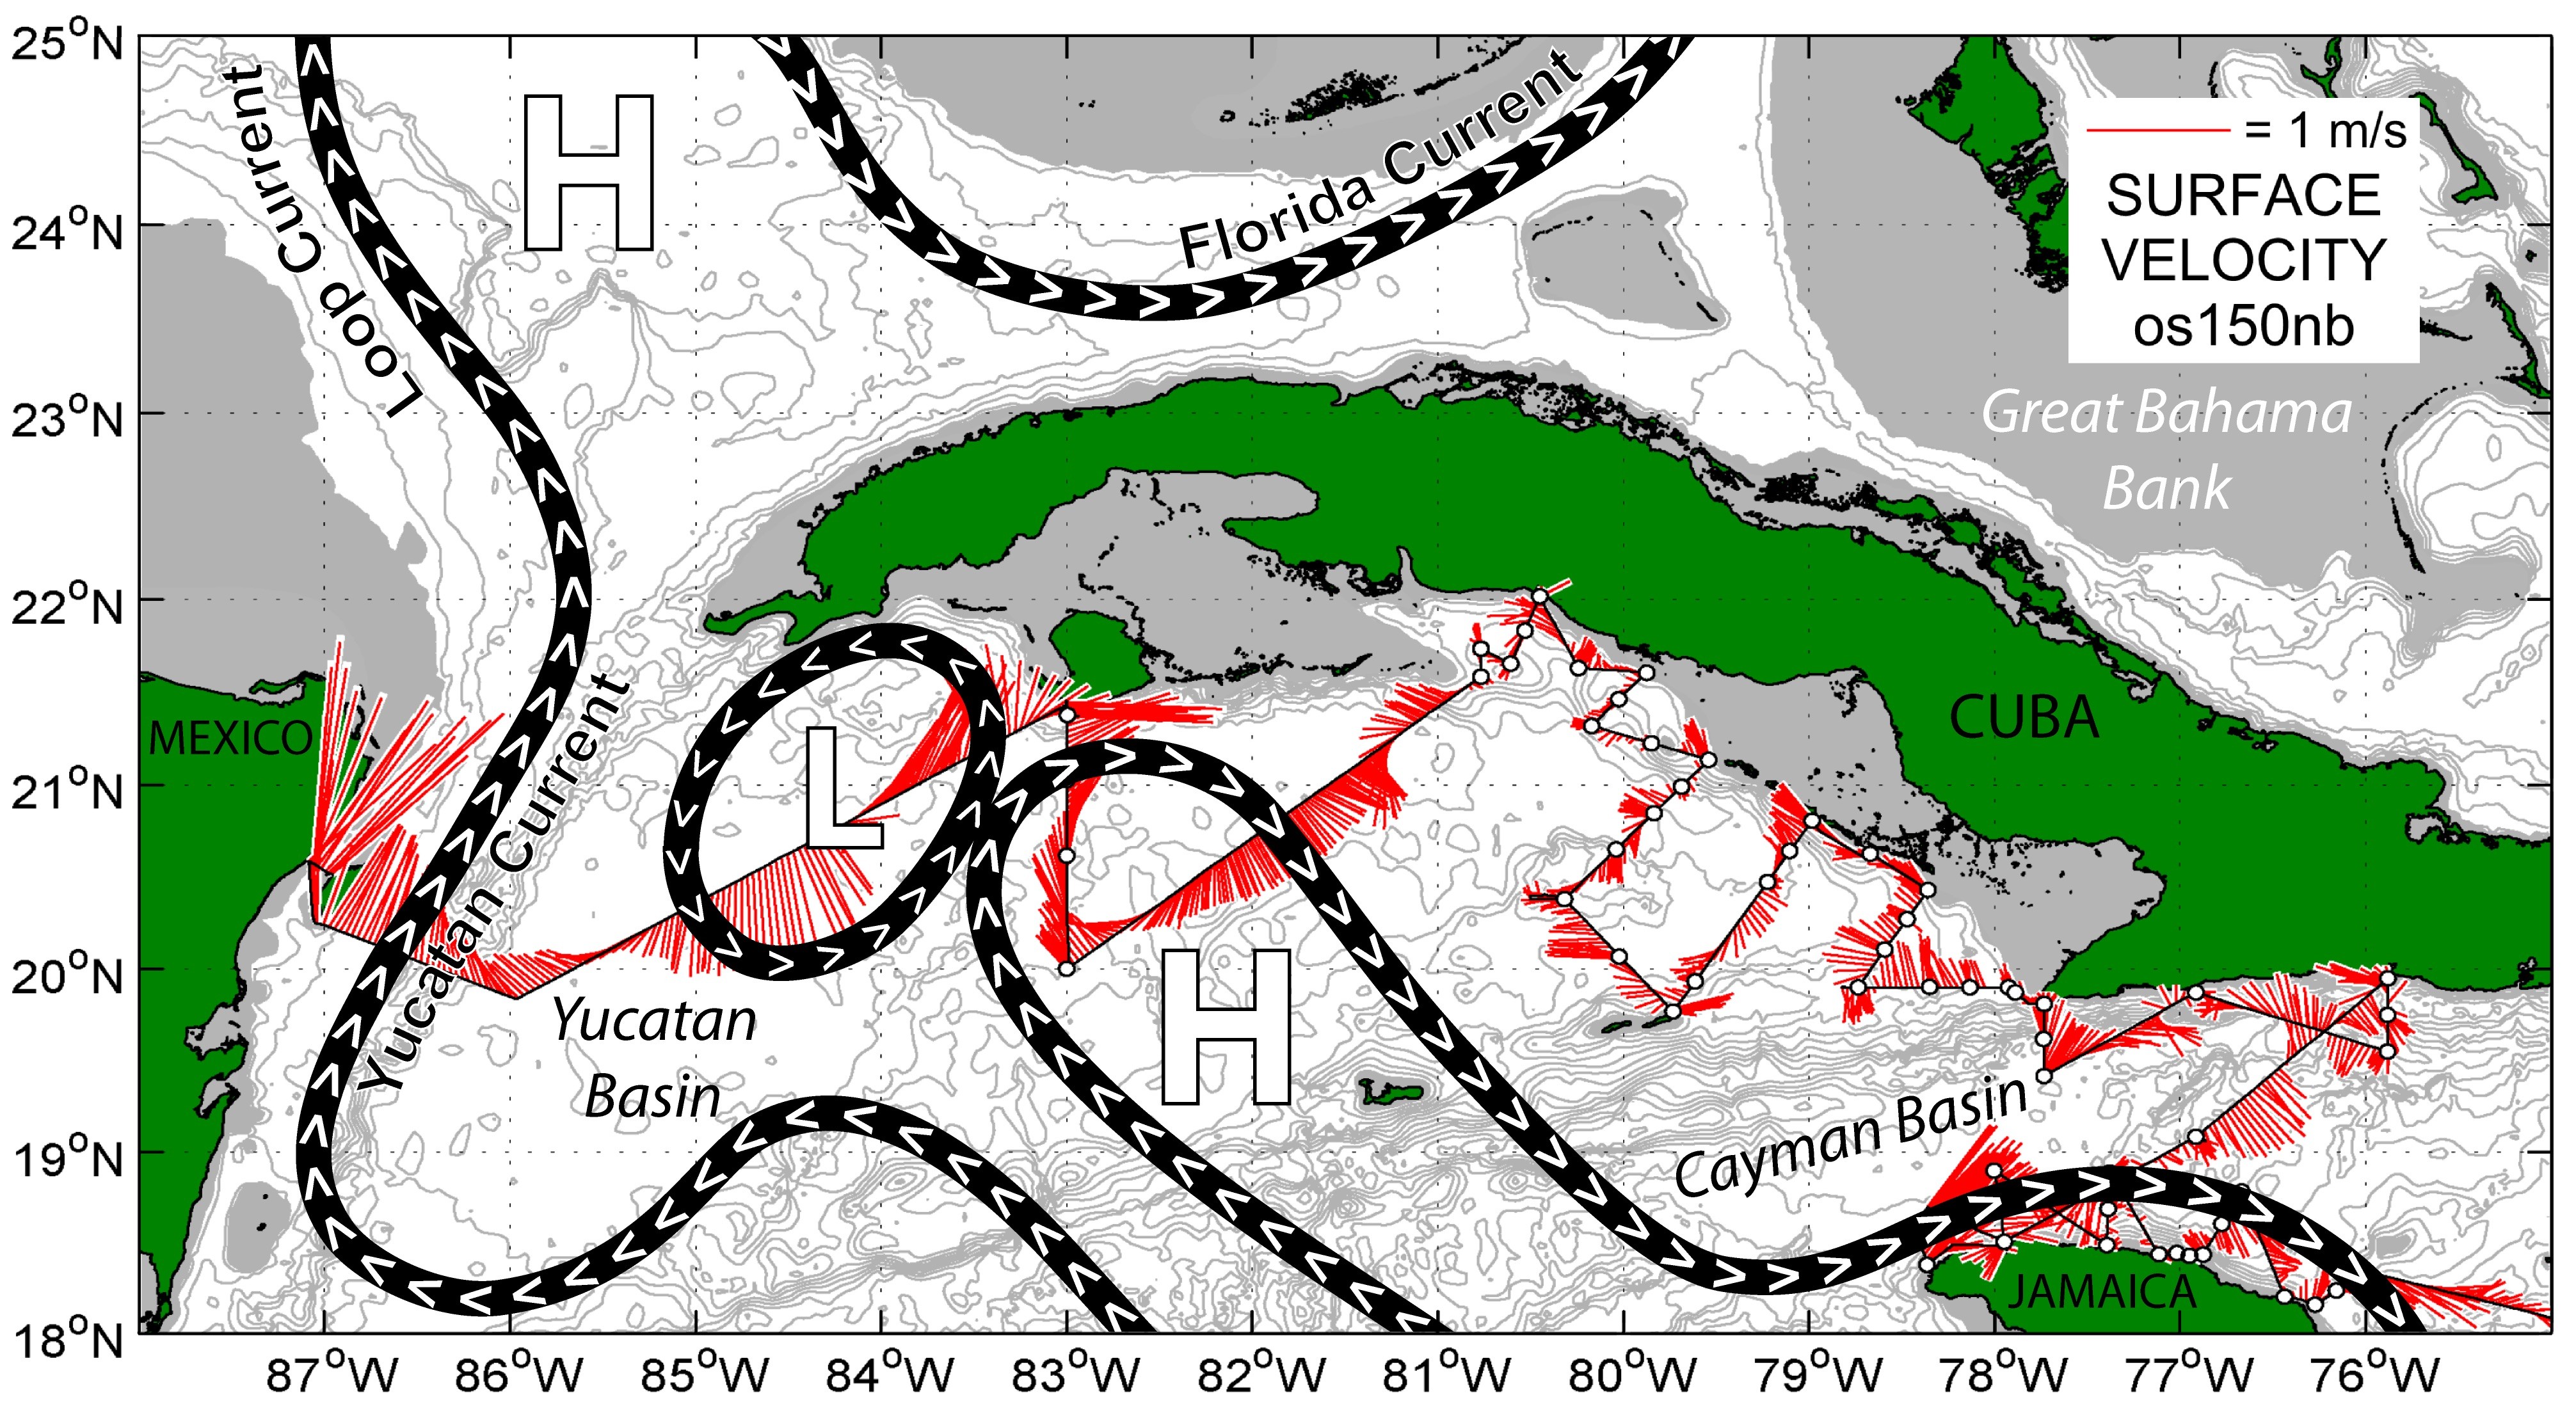 Mapa que muestra los vectores de velocidad de las corrientes superficiales (en rojo) medidos con el perfilador de corrientes acústico Doppler montado en el casco del buque Nancy Foster de la NOAA